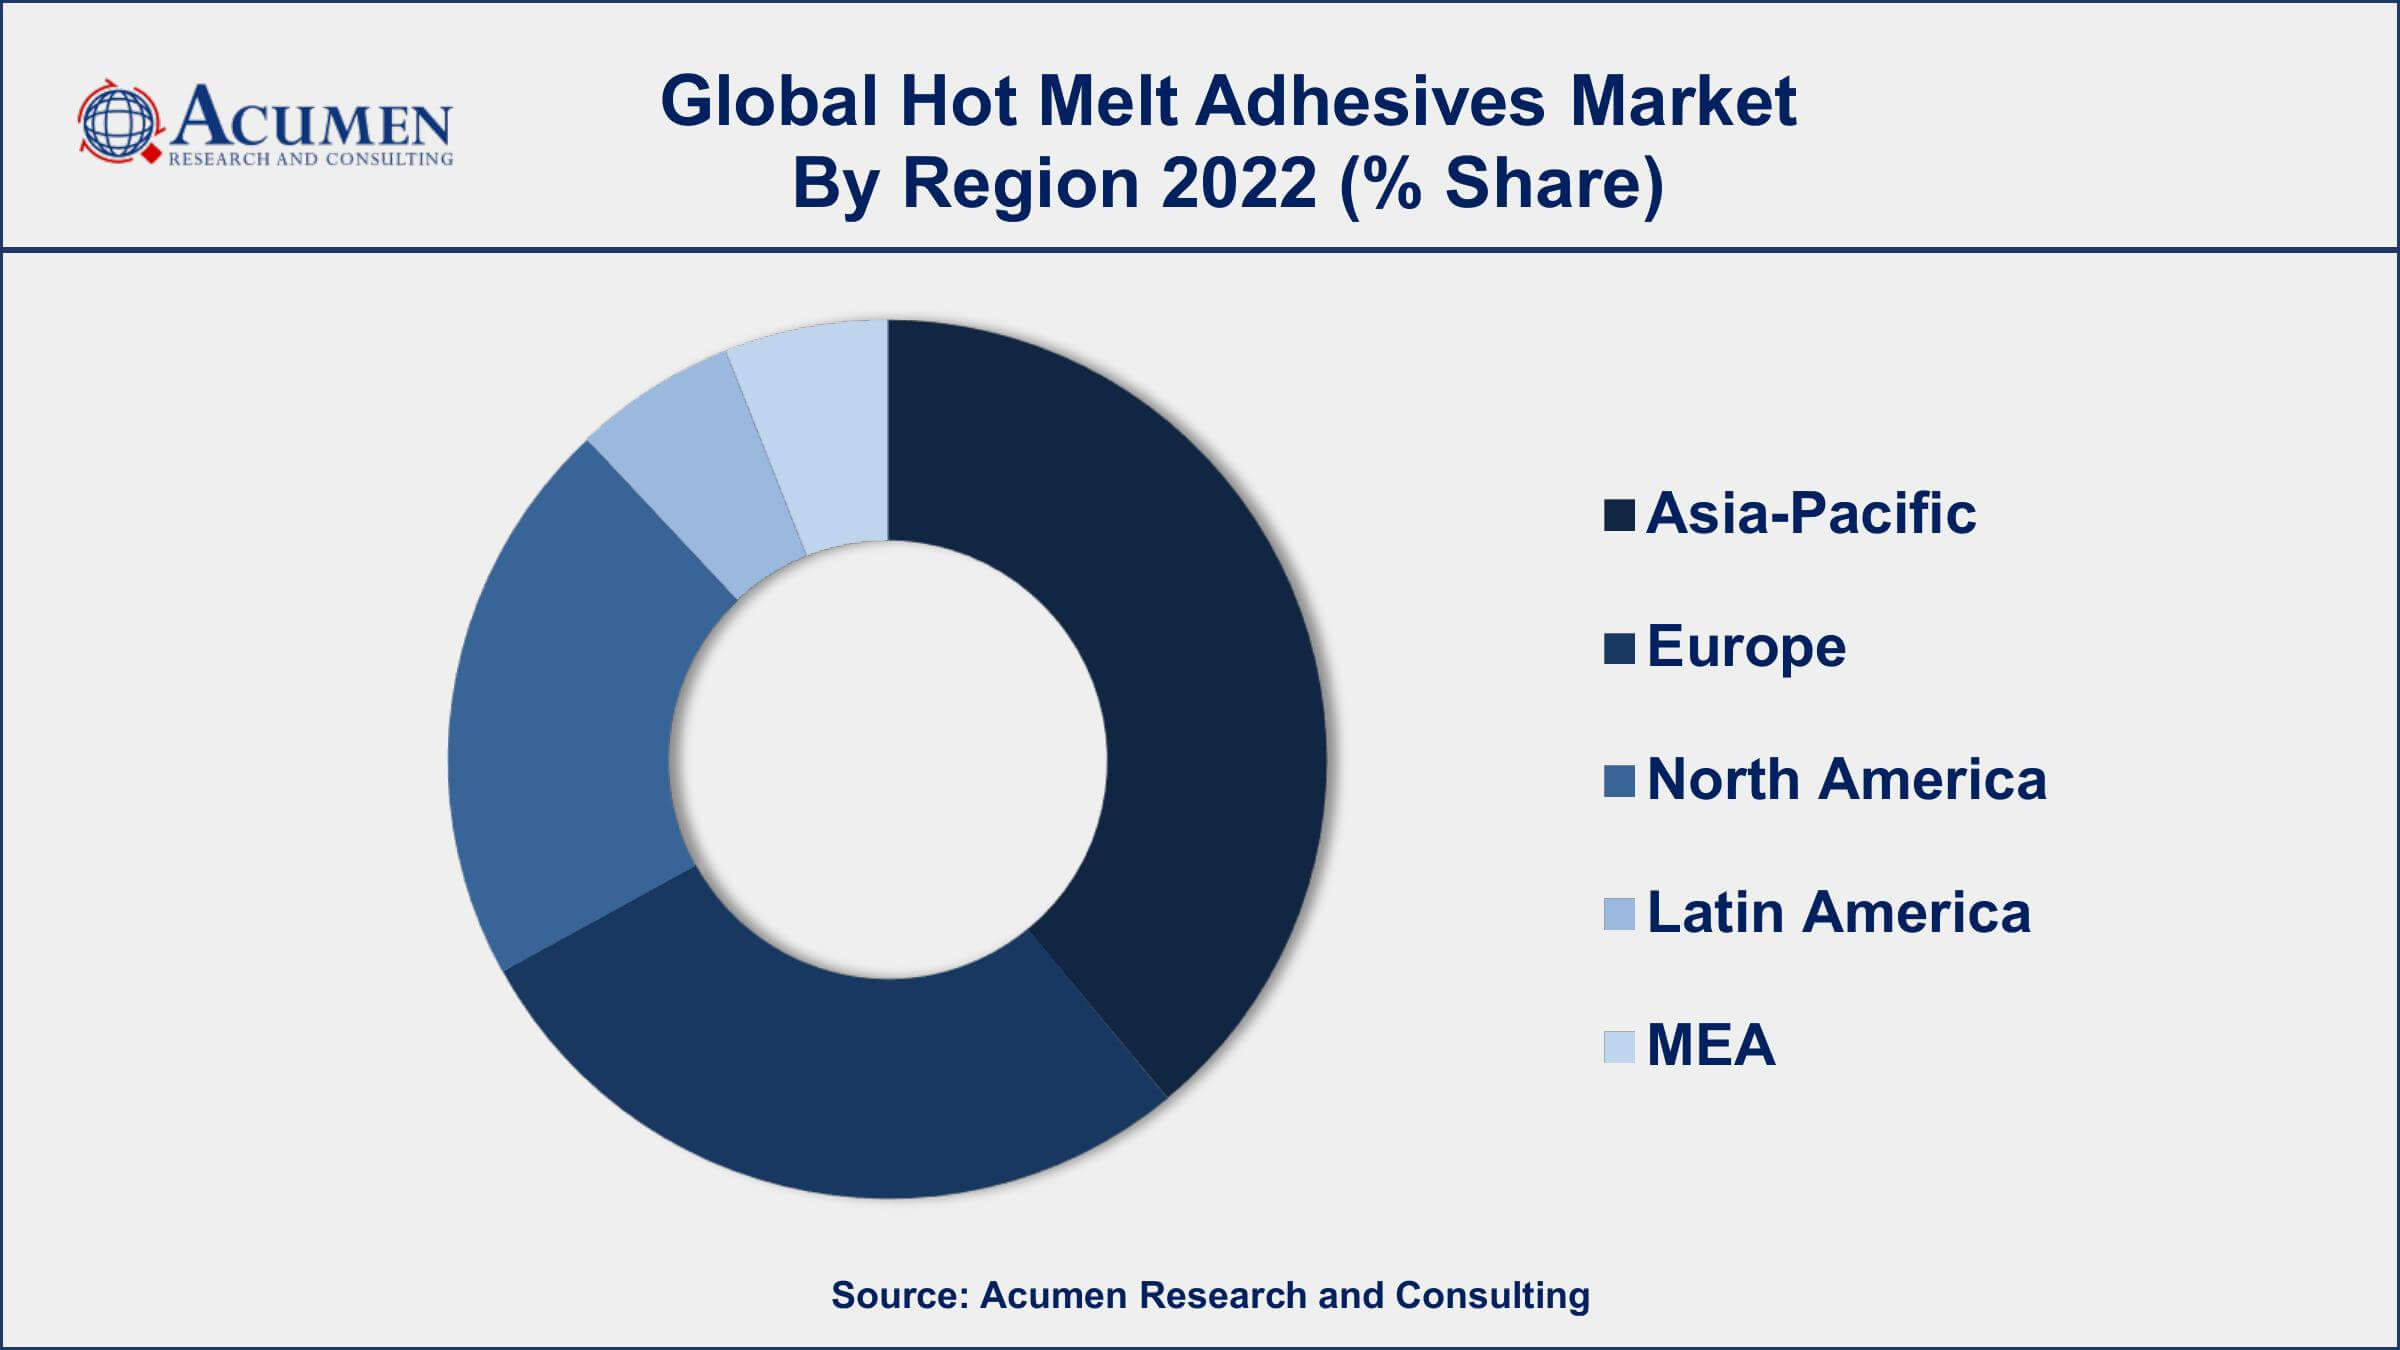 Hot Melt Adhesives Market Drivers